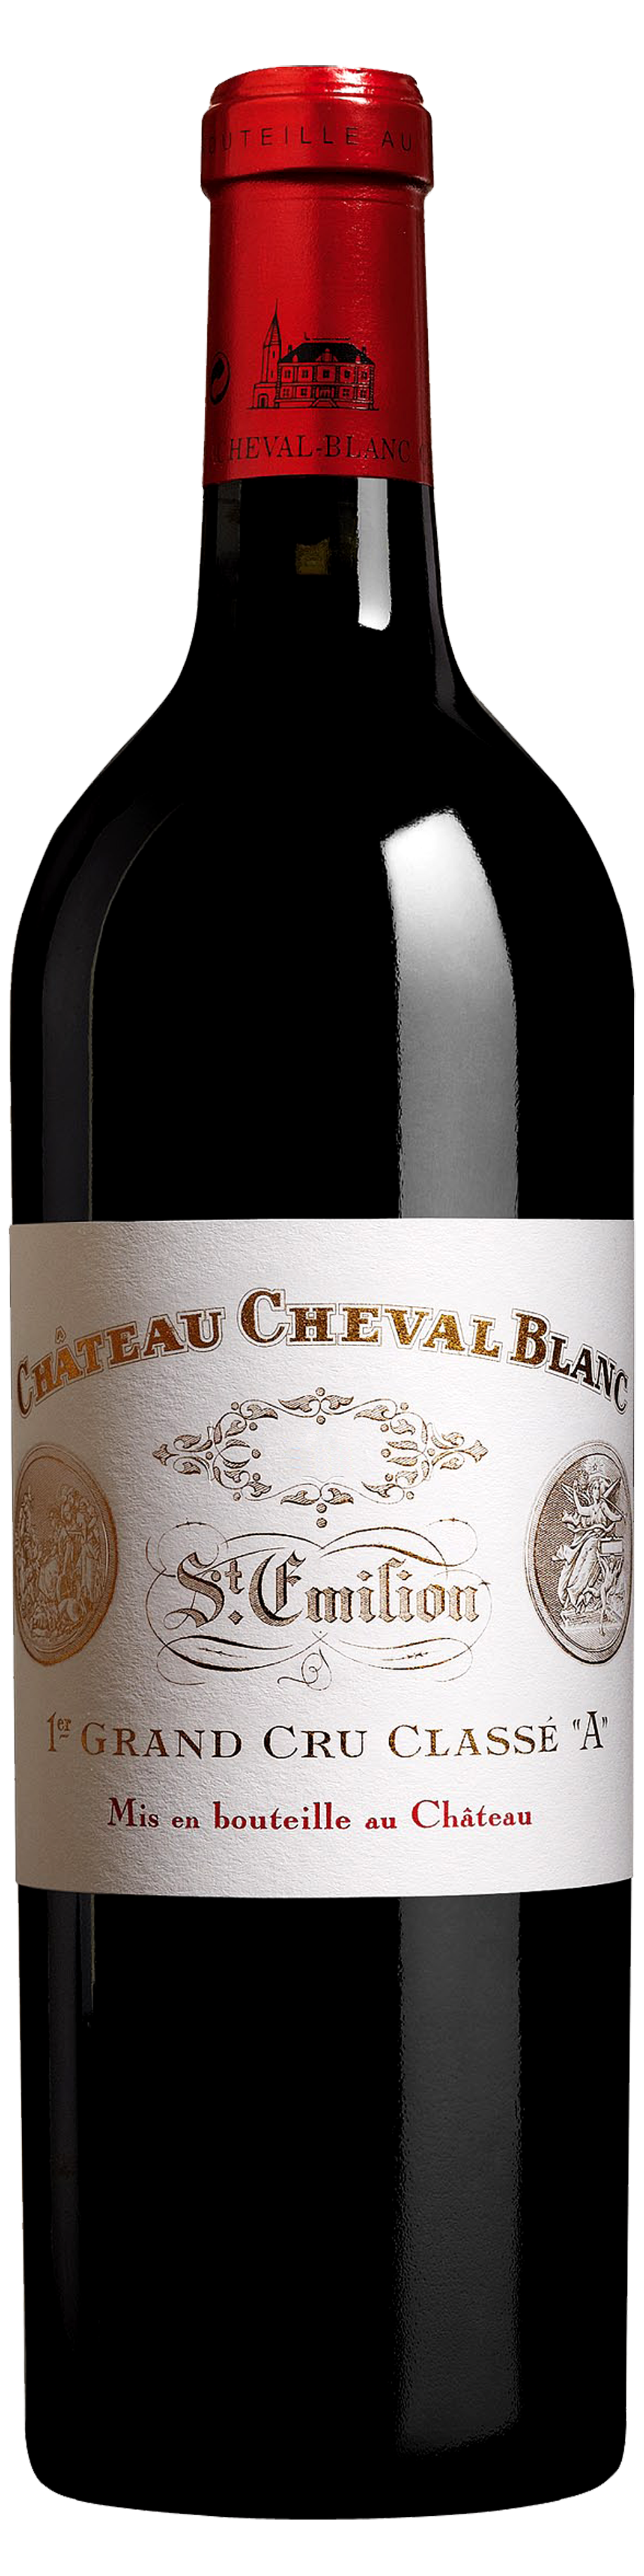 Bottle shot of 2008 Château Cheval Blanc, 1er Gr Cru Classé St Emilion